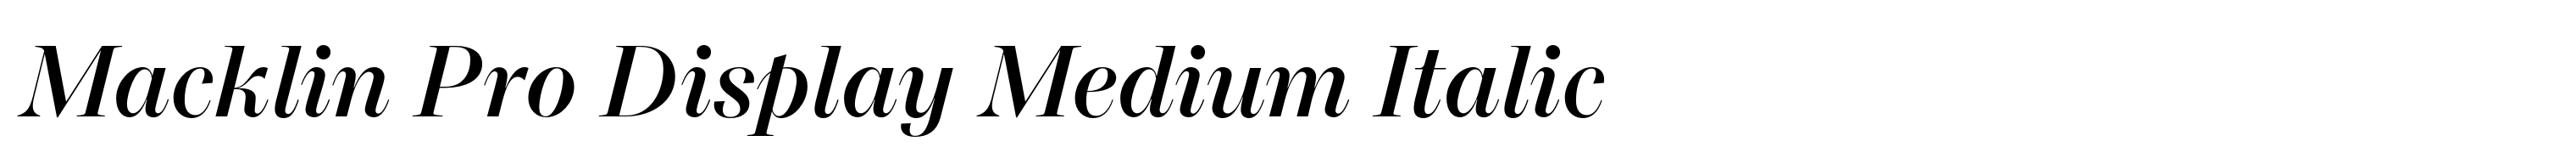 Macklin Pro Display Medium Italic